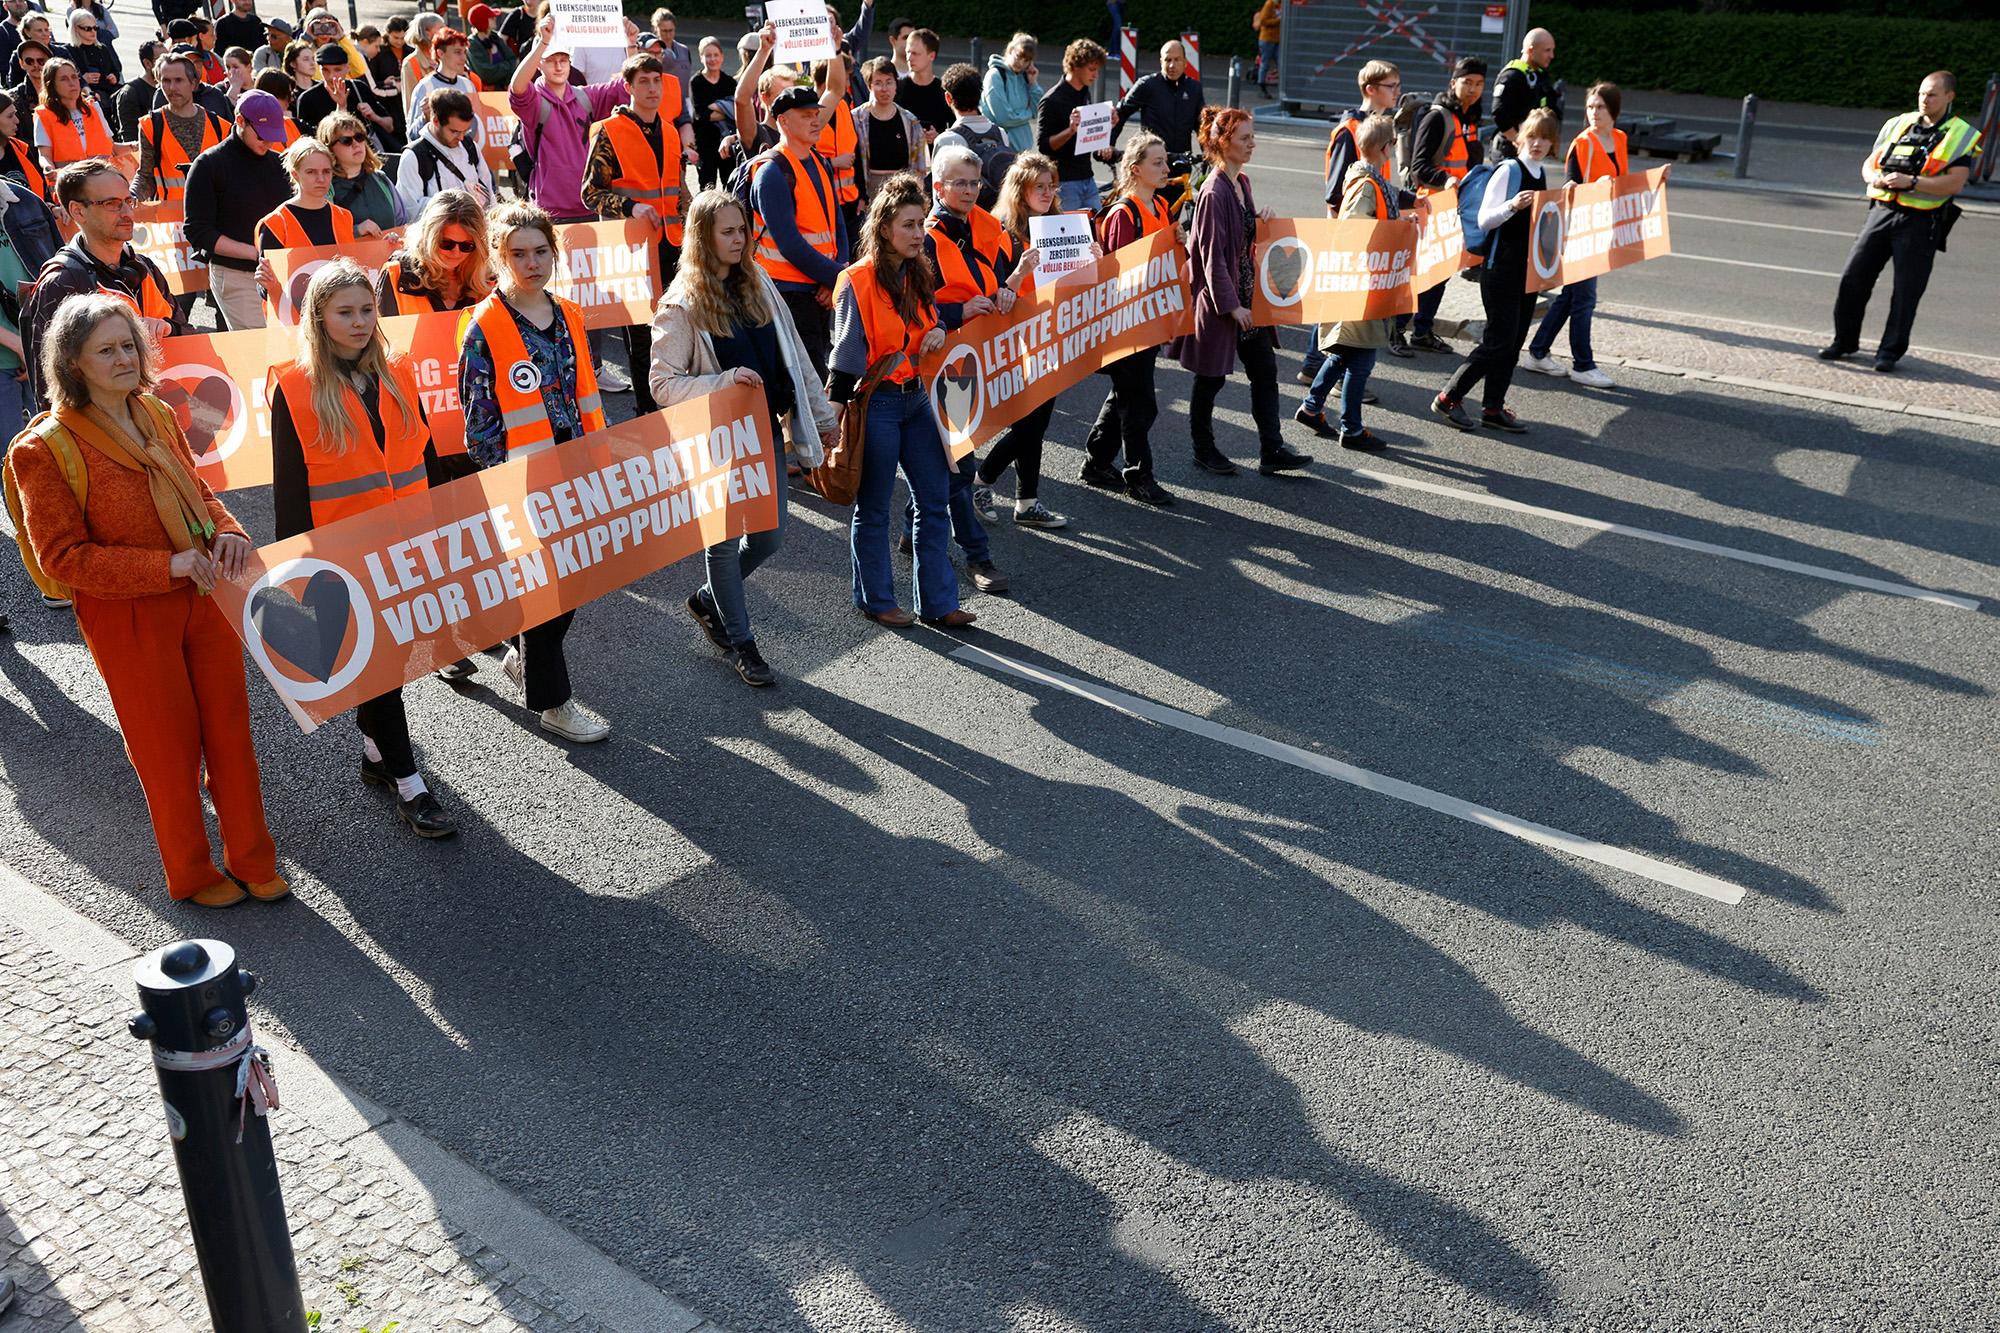 Marsch der Protestgruppe "Letzte Generation" in Berlin am Mittwoch (Bild: Odd Andersen/AFP)